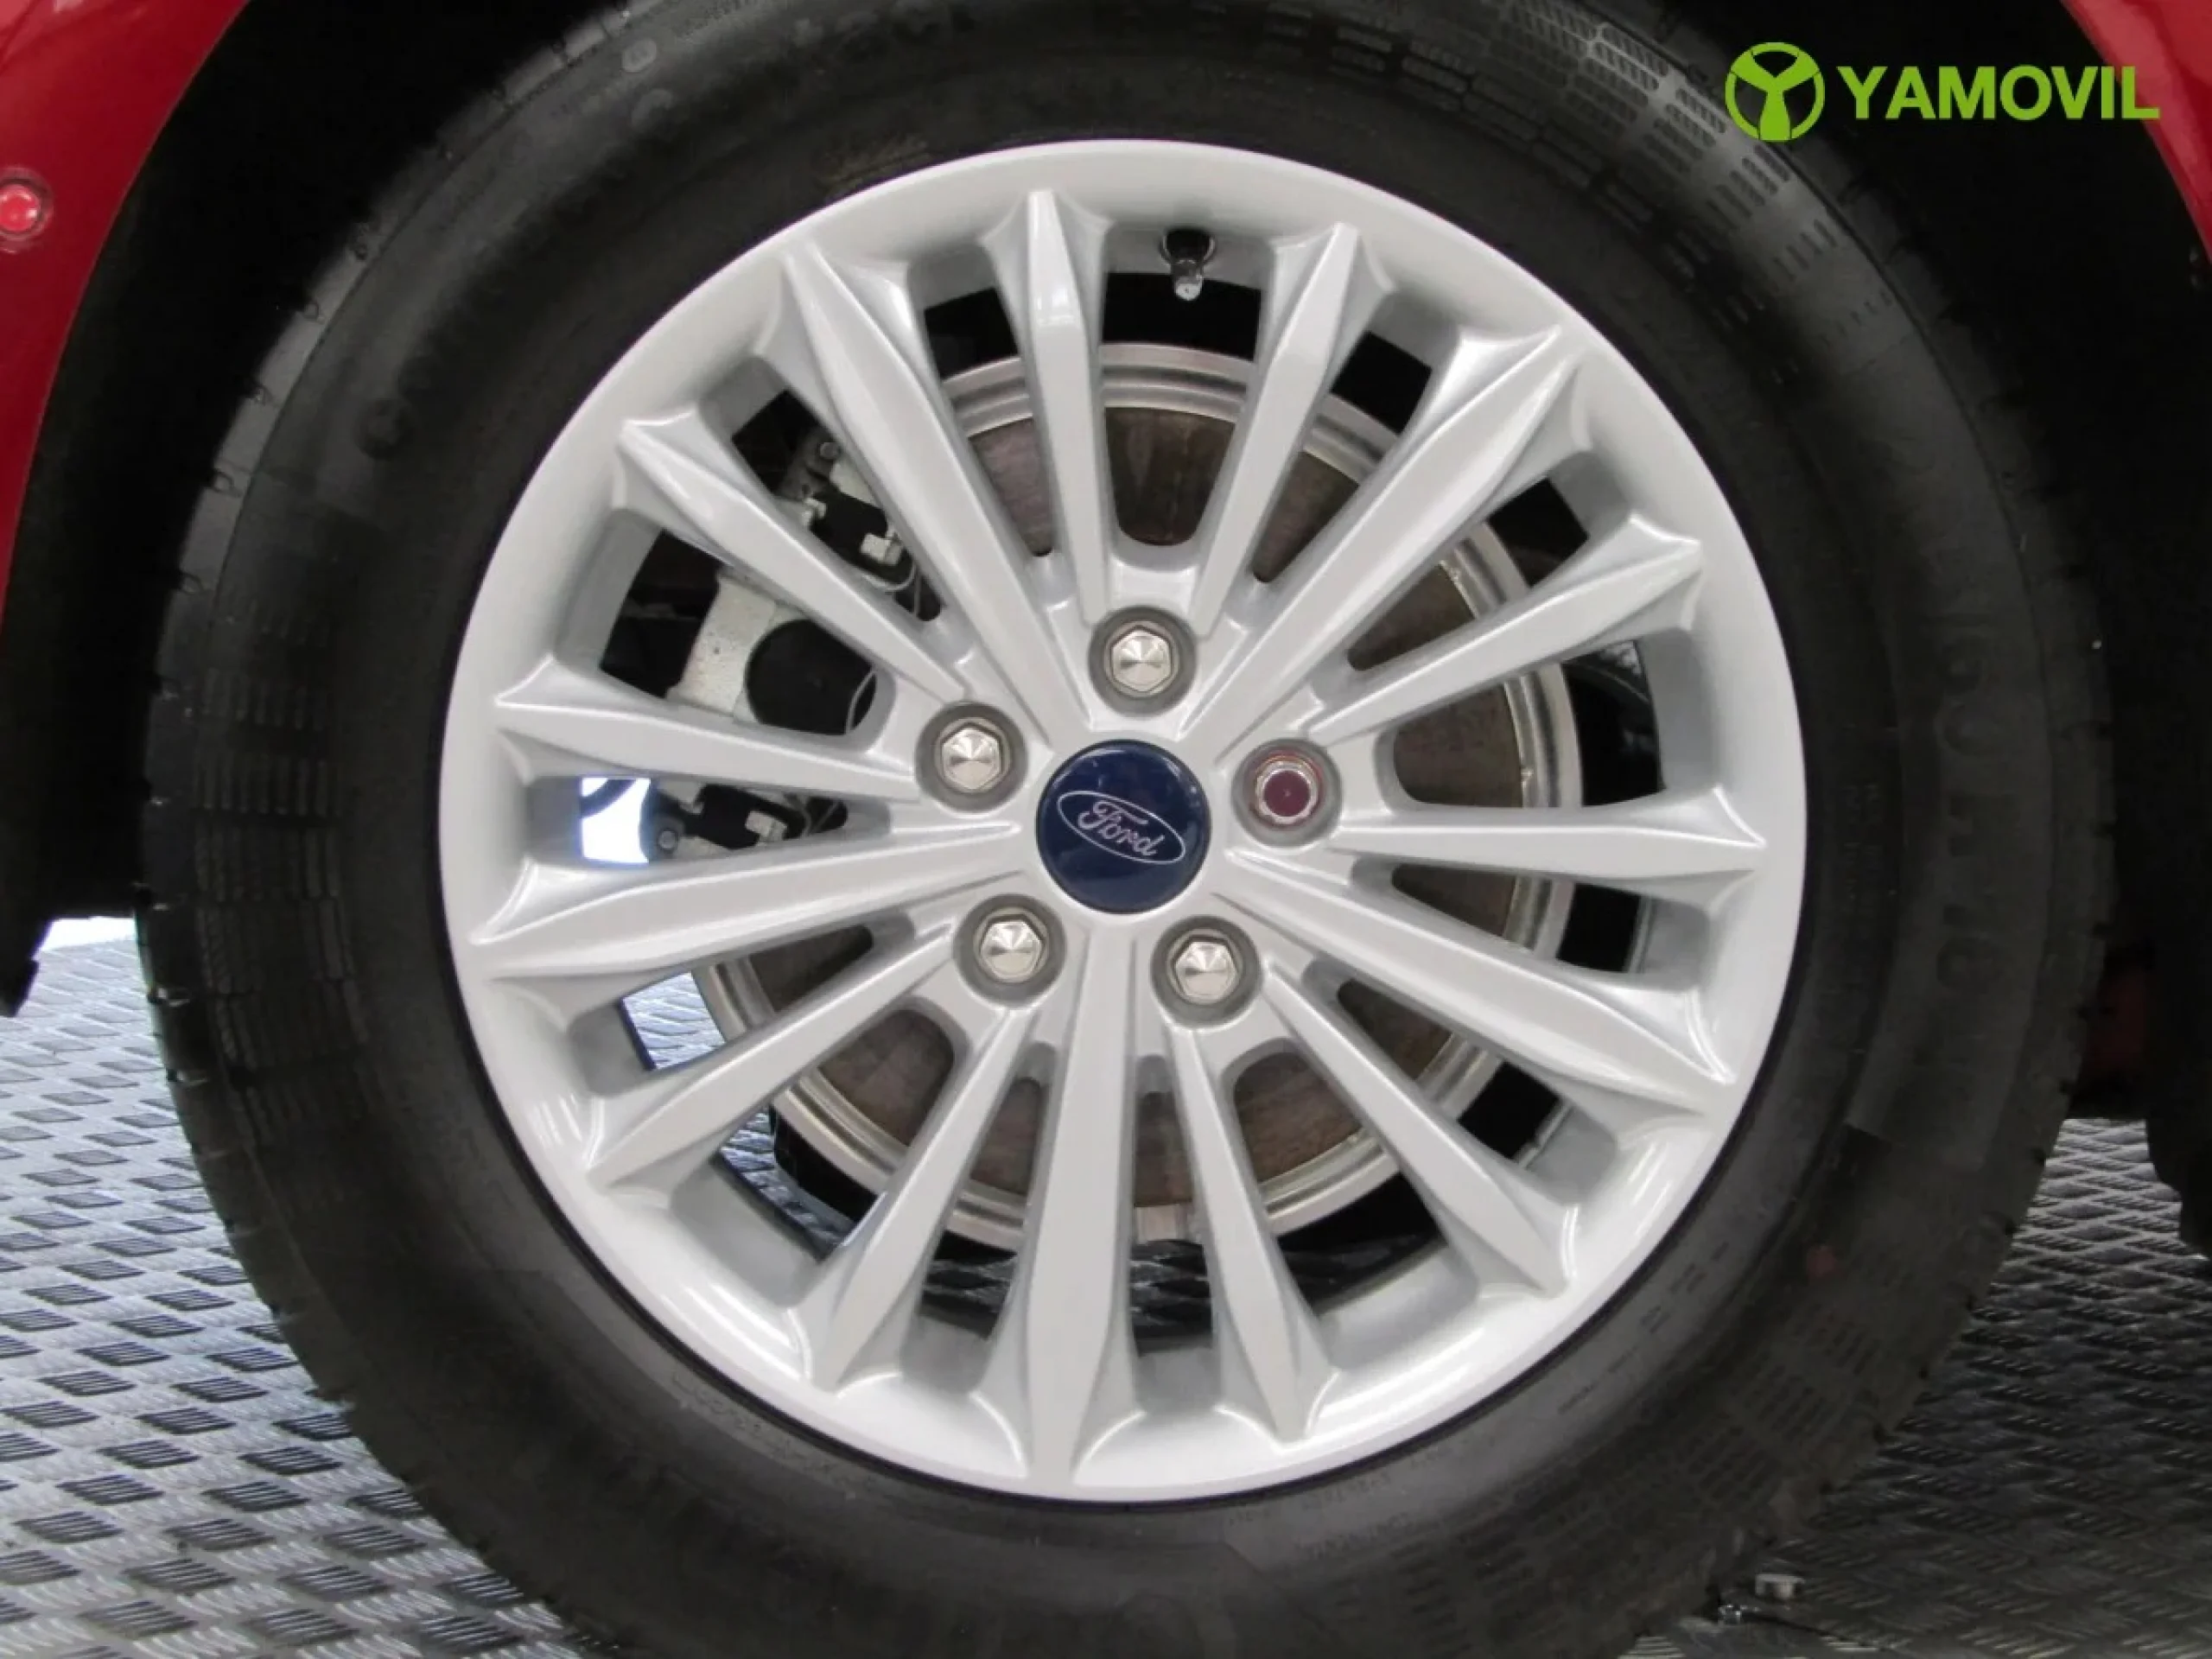 Ford Focus 1.0 Ecoboost Titanium Powershift 92 kW (125 CV) - Foto 10